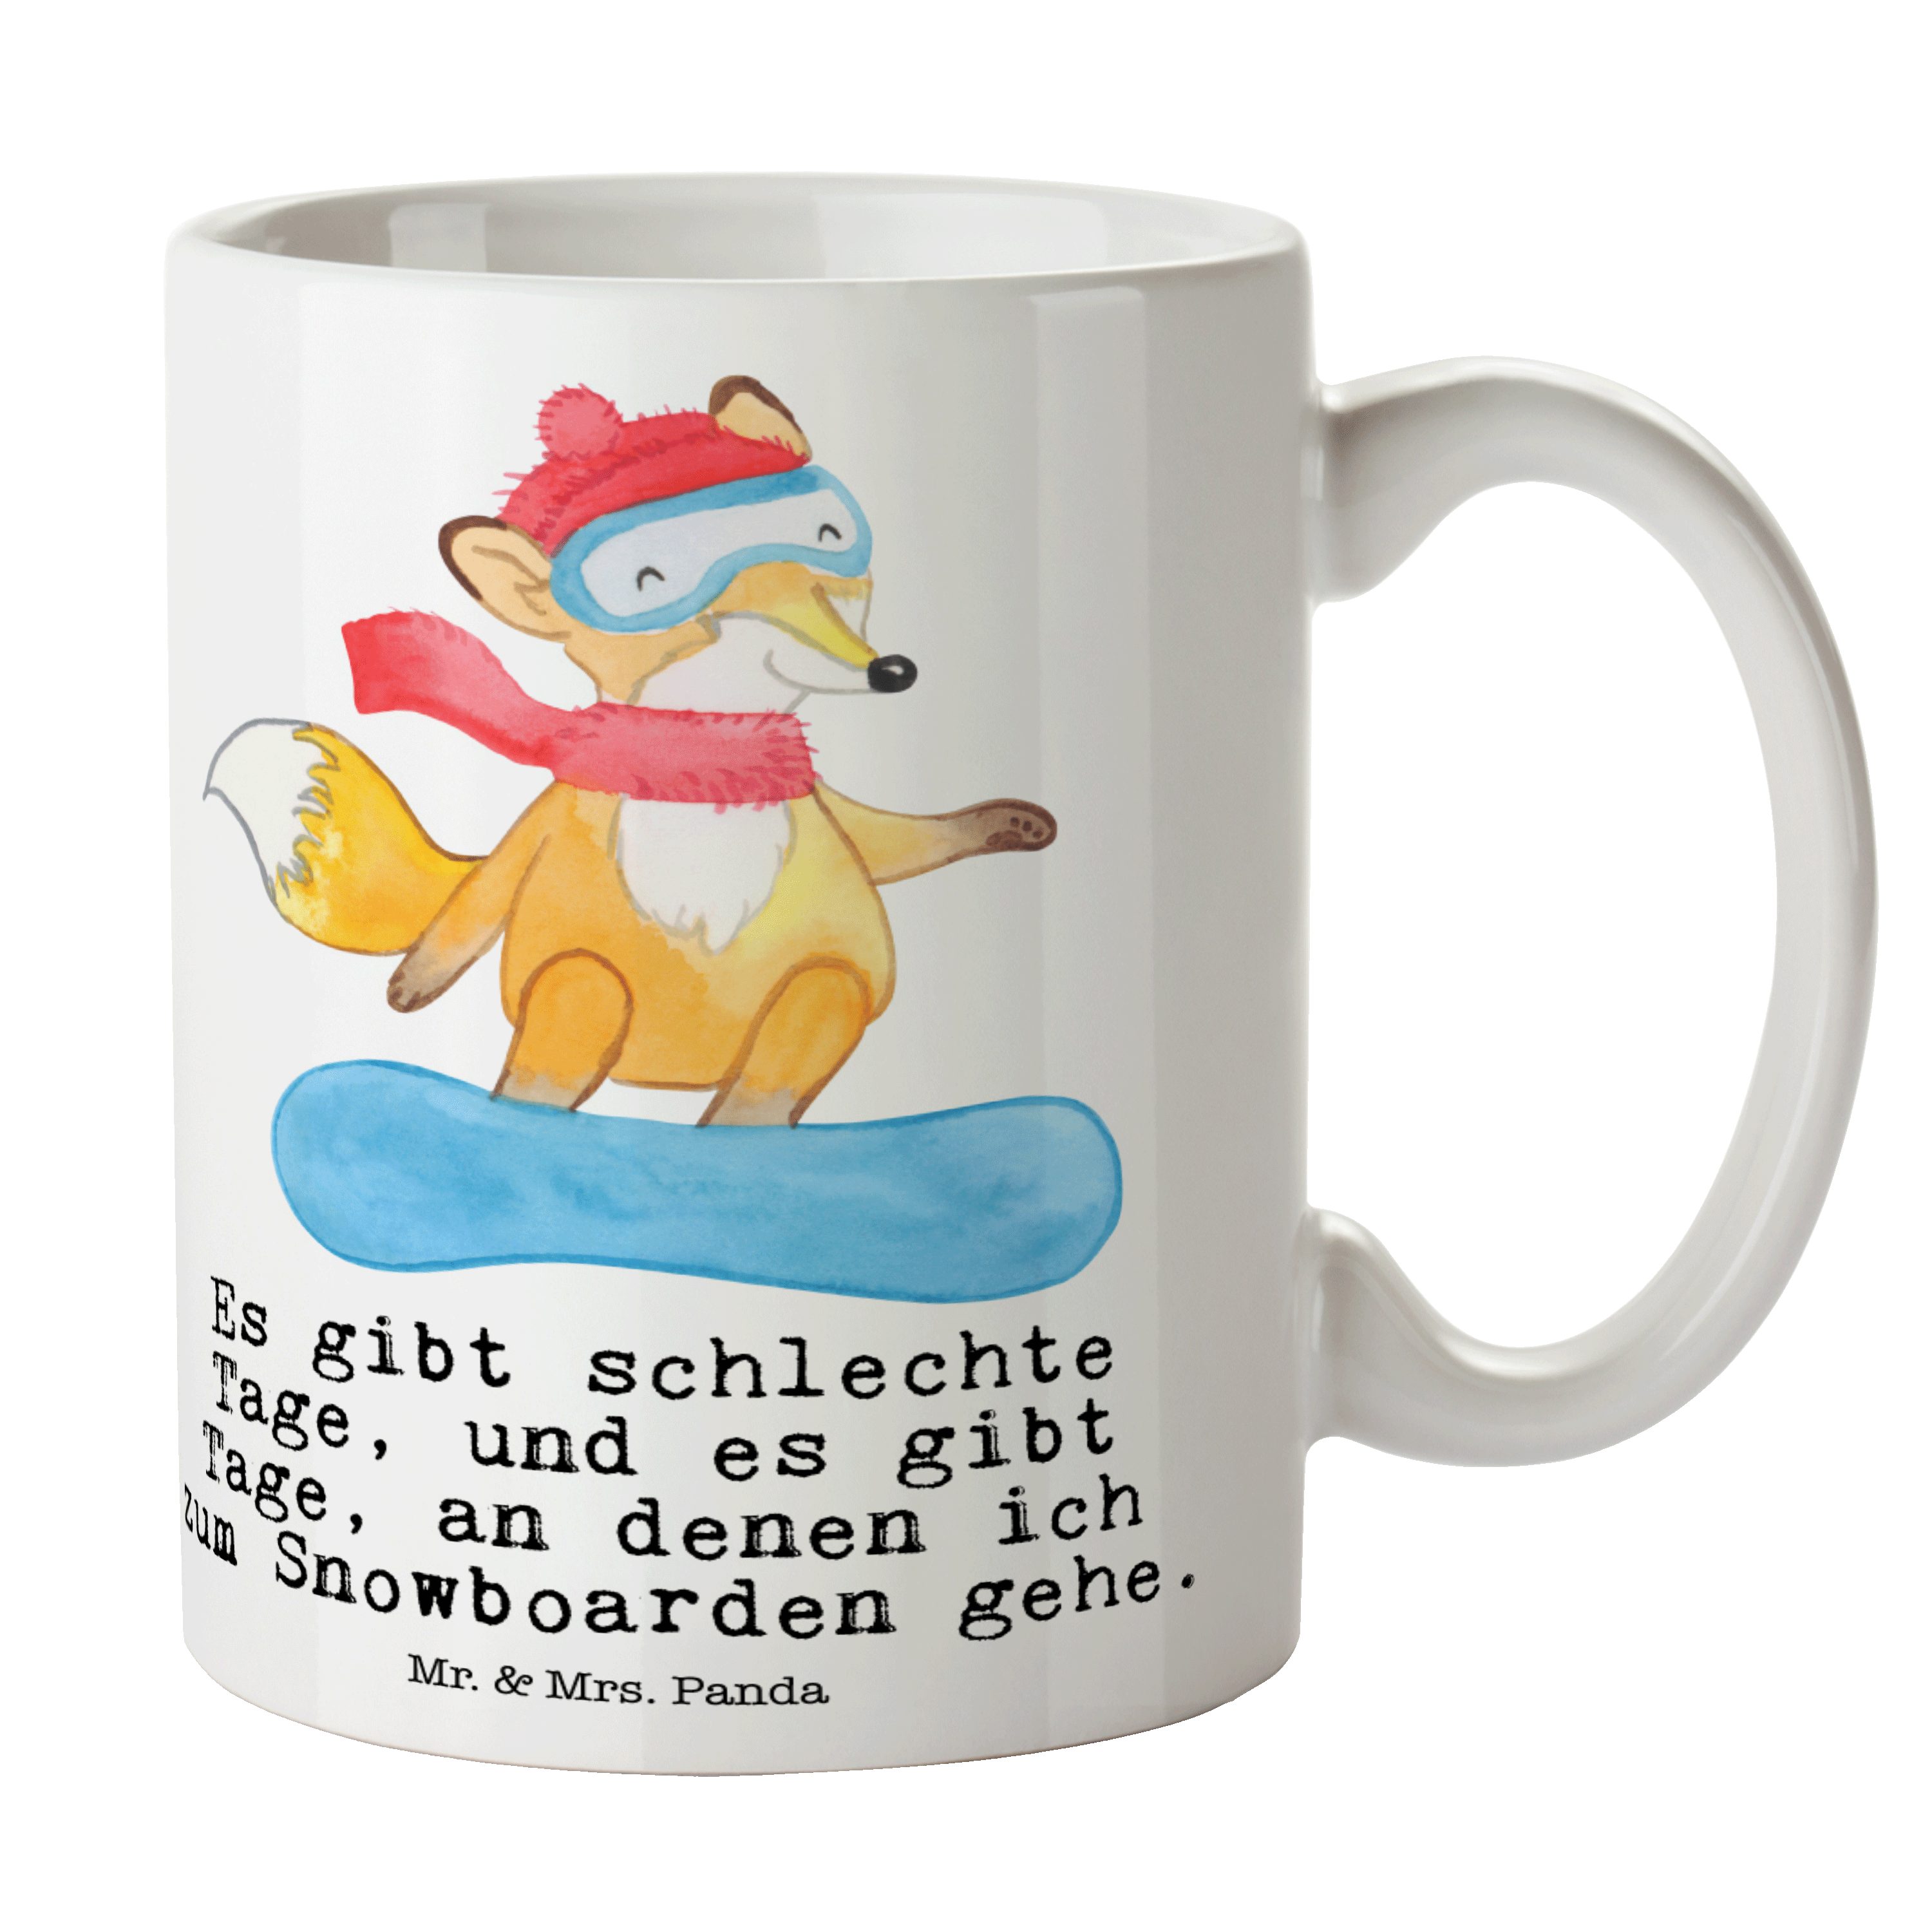 Mr. & Mrs. Panda Tasse Fuchs Snowboarden Tage - Weiß - Geschenk, Kaffeetasse, Porzellantasse, Keramik